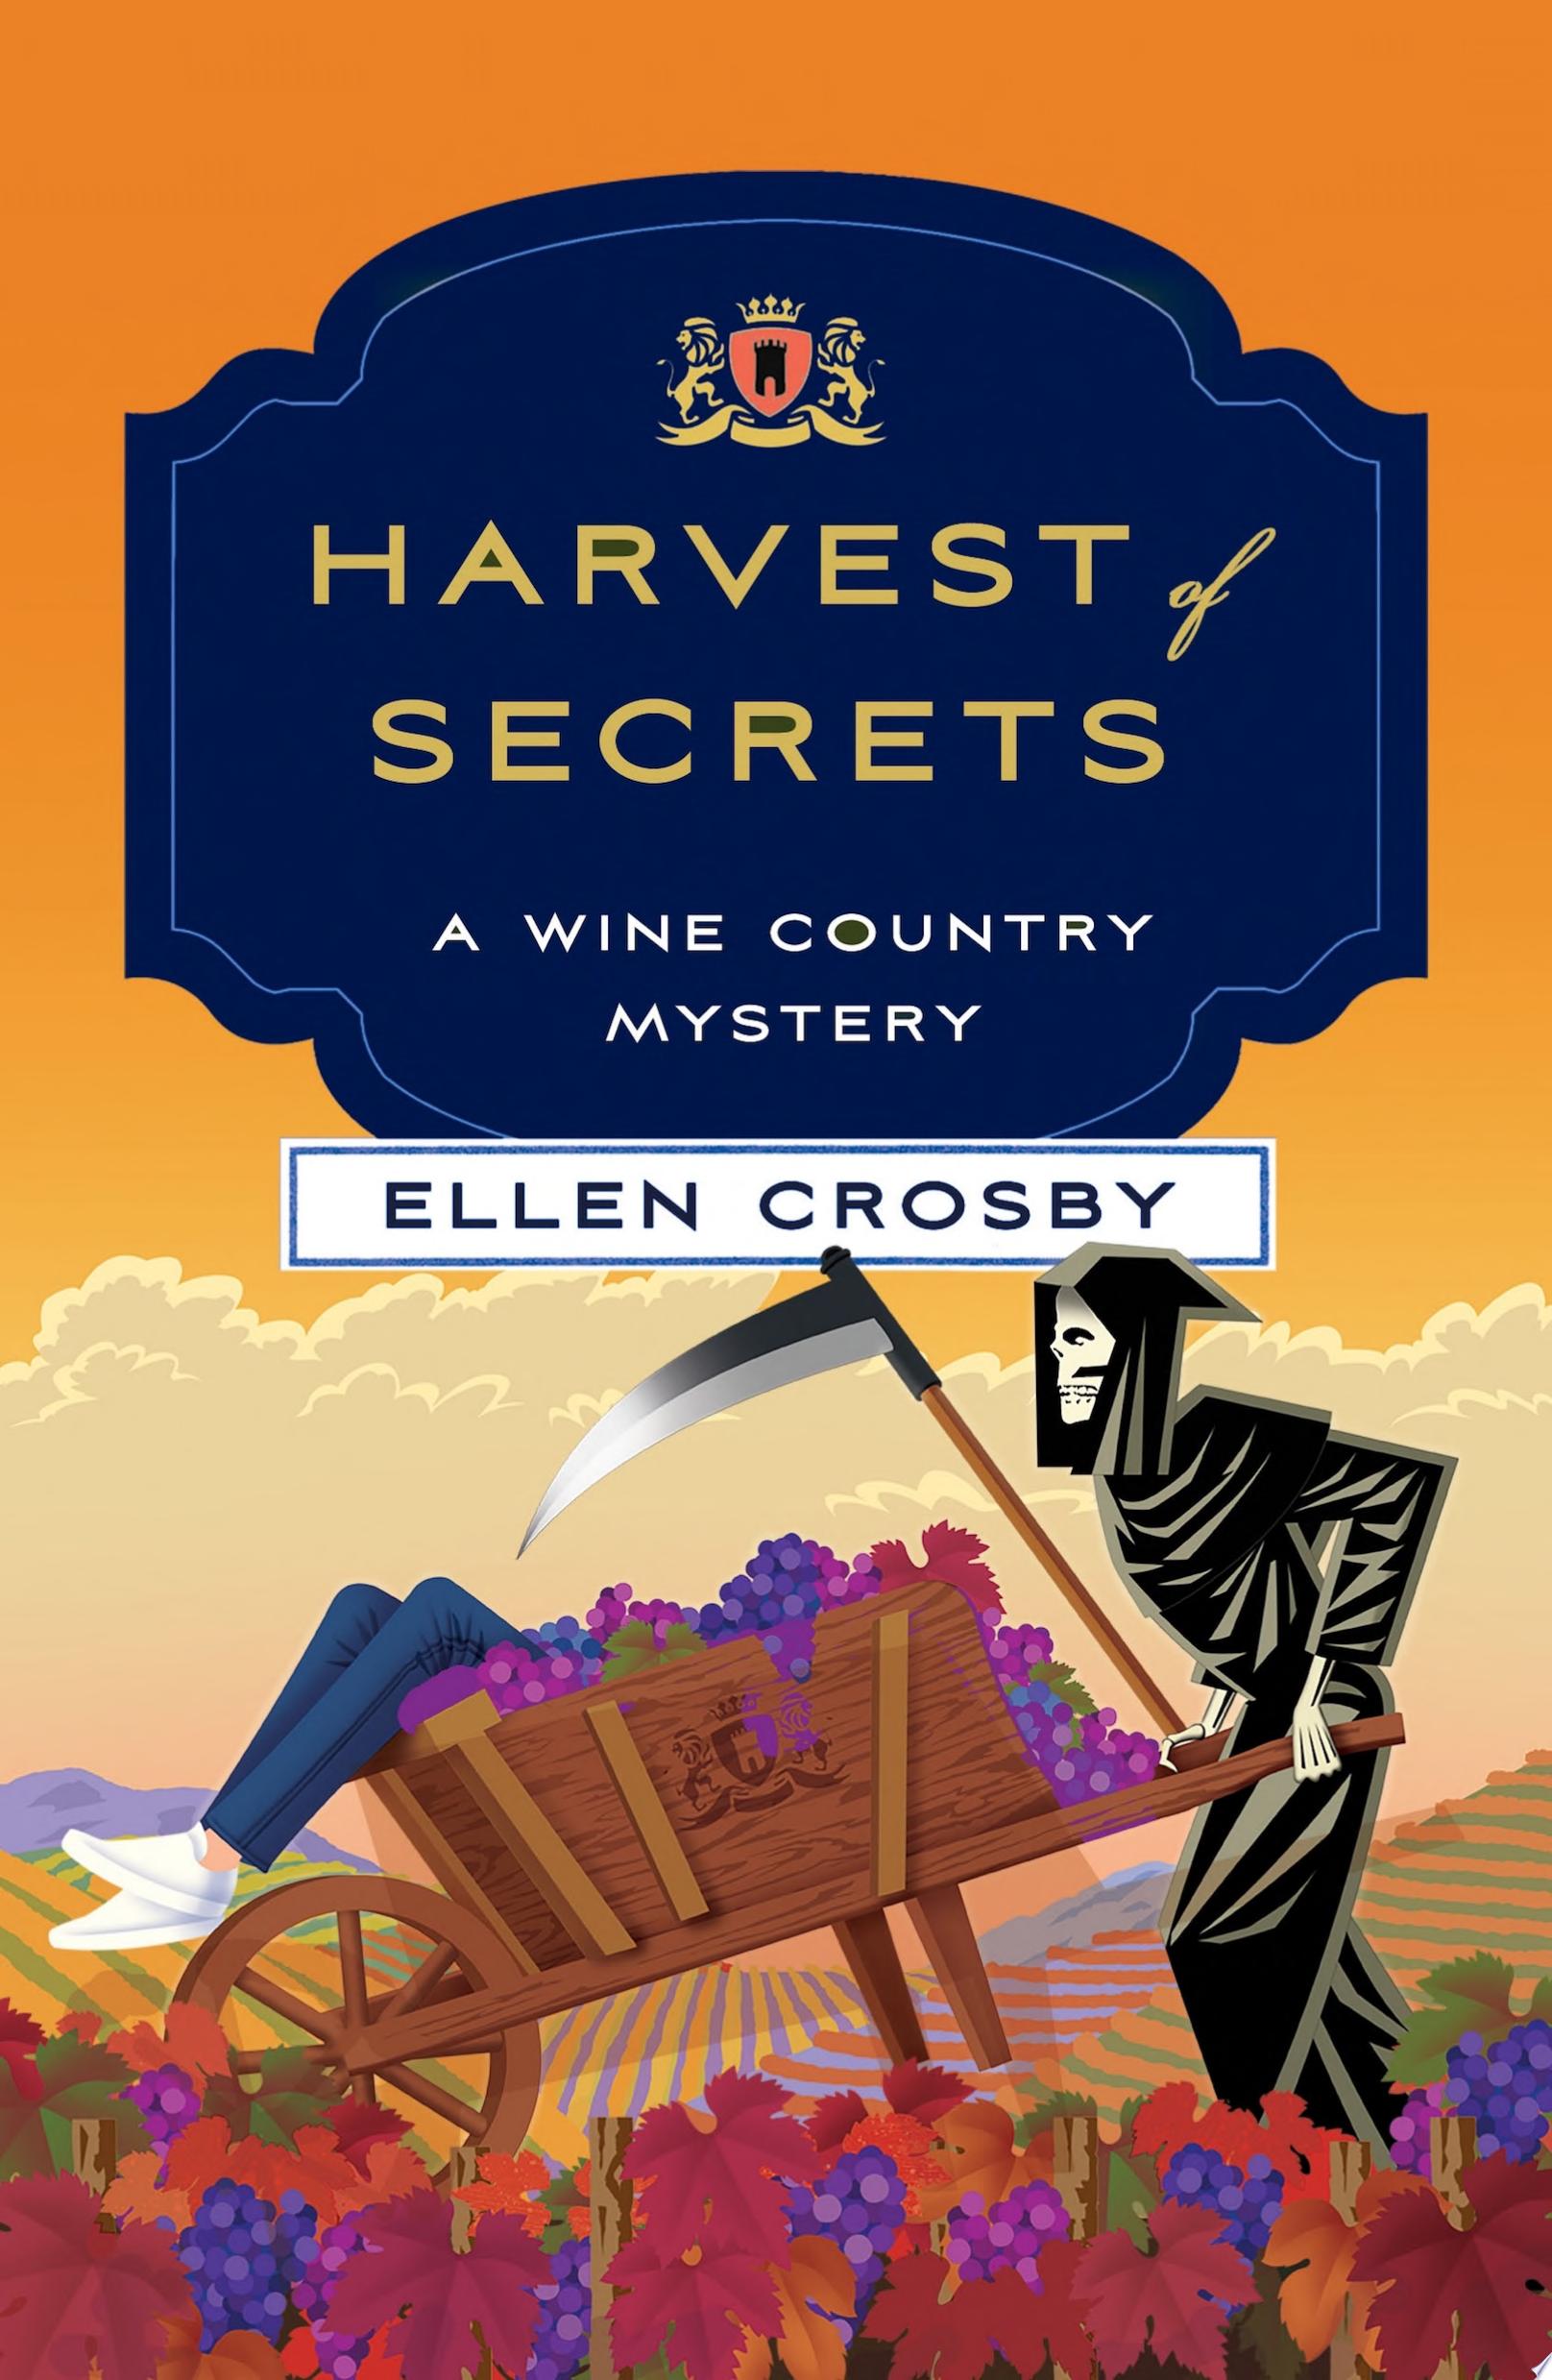 Image for "Harvest of Secrets"